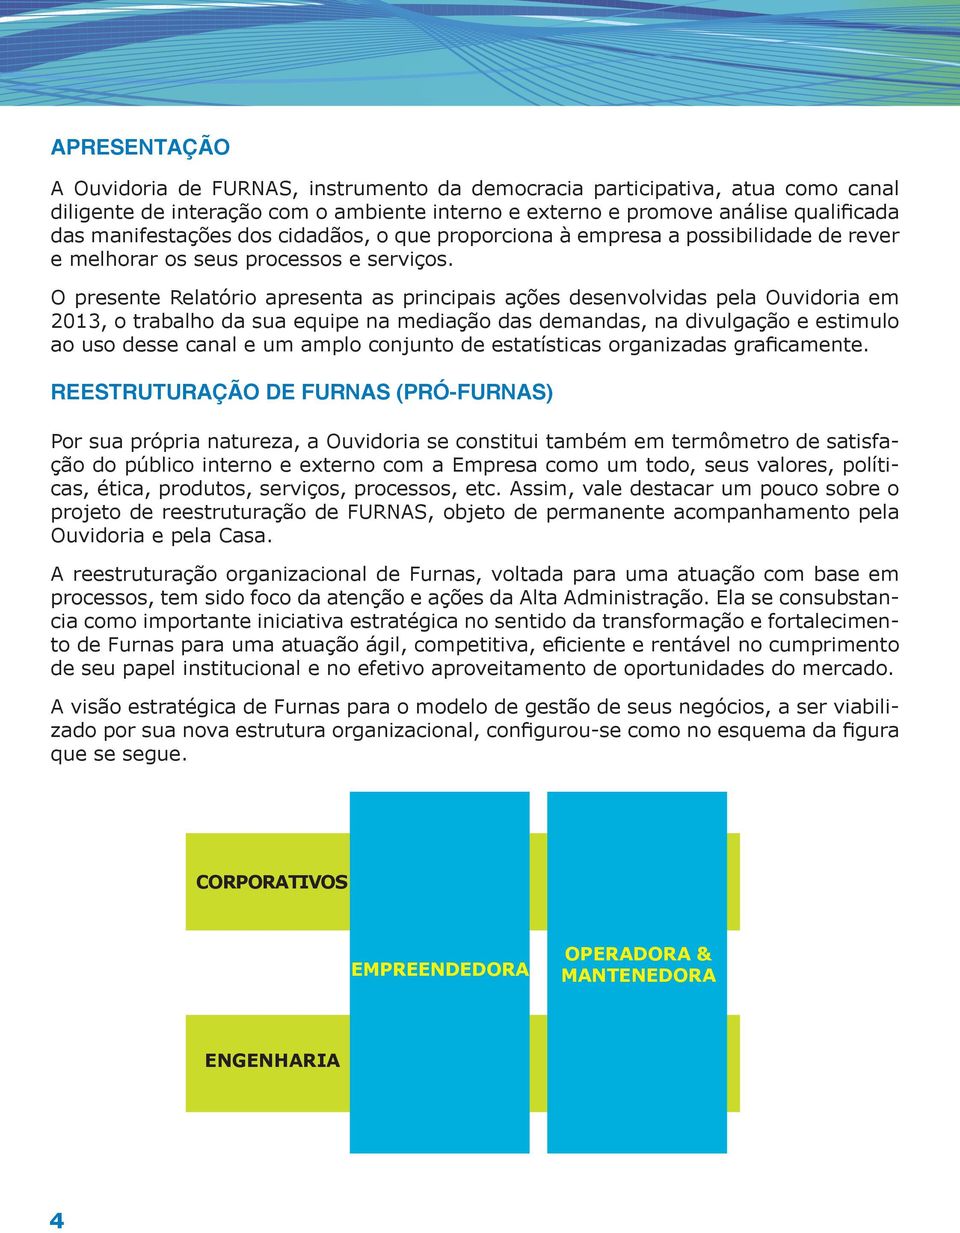 O presente Relatório apresenta as principais ações desenvolvidas pela Ouvidoria em 2013, o trabalho da sua equipe na mediação das demandas, na divulgação e estimulo ao uso desse canal e um amplo